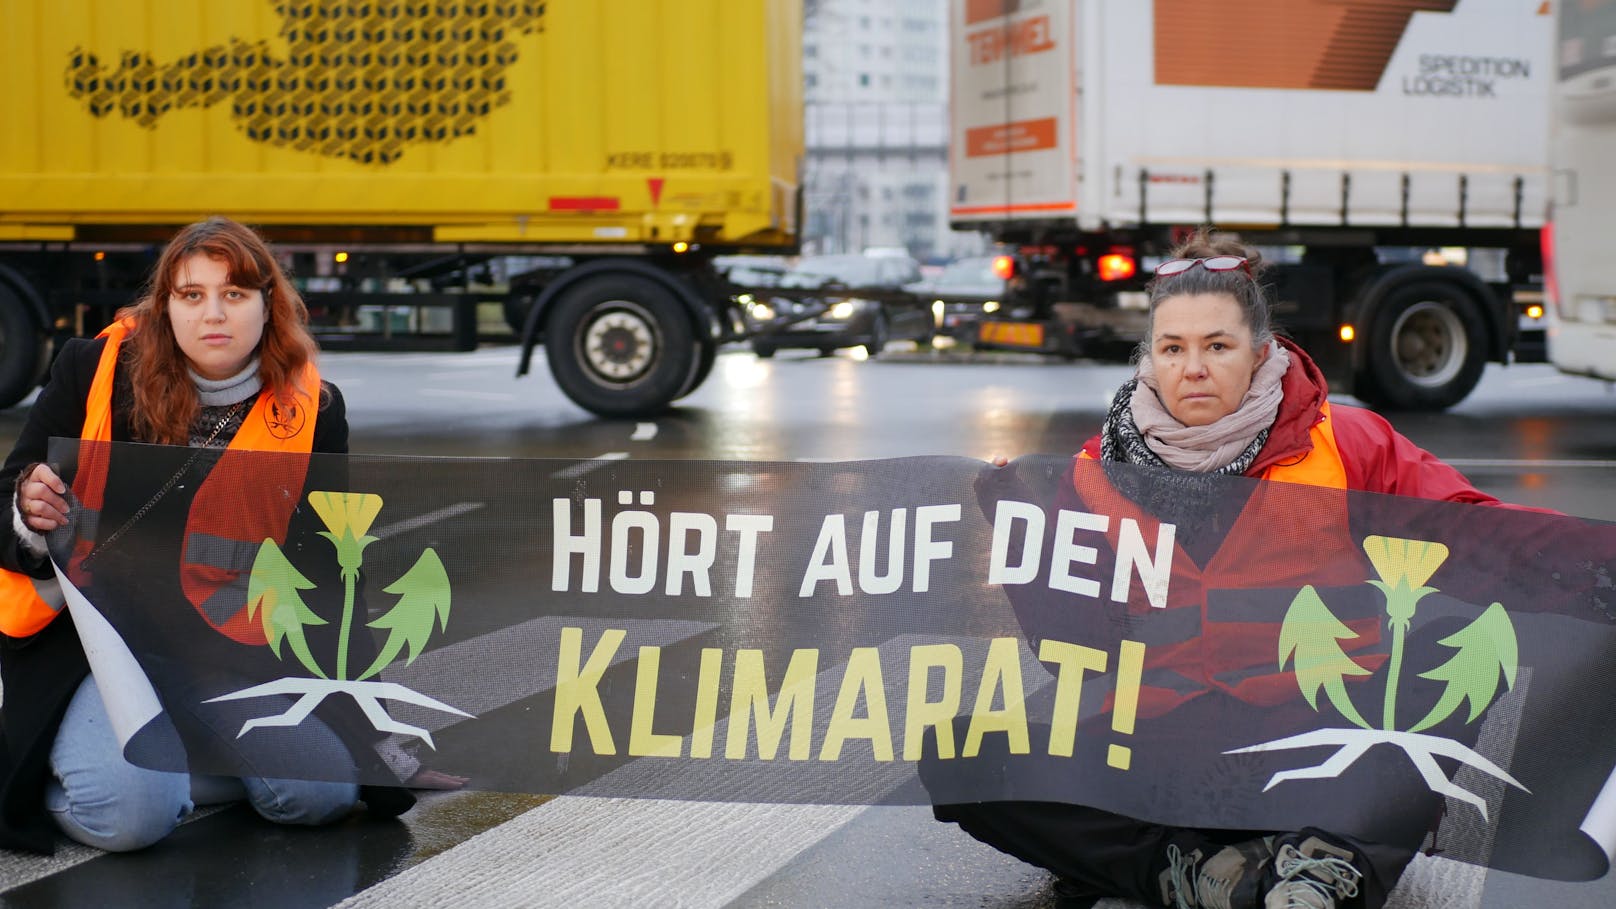 Aktivisten der "Letzten Generation" legten im Grazer Frühverkehr Straßen und Kreuzungen wiederholt für kurze Zeit still. Unter anderem protestierten sie auf der Kärntnerstraße, der Keplerbrücke und dem Griesplatz. Anders als bei vergangenen Protestaktionen wurde diesmal auf den Superkleber verzichtet.